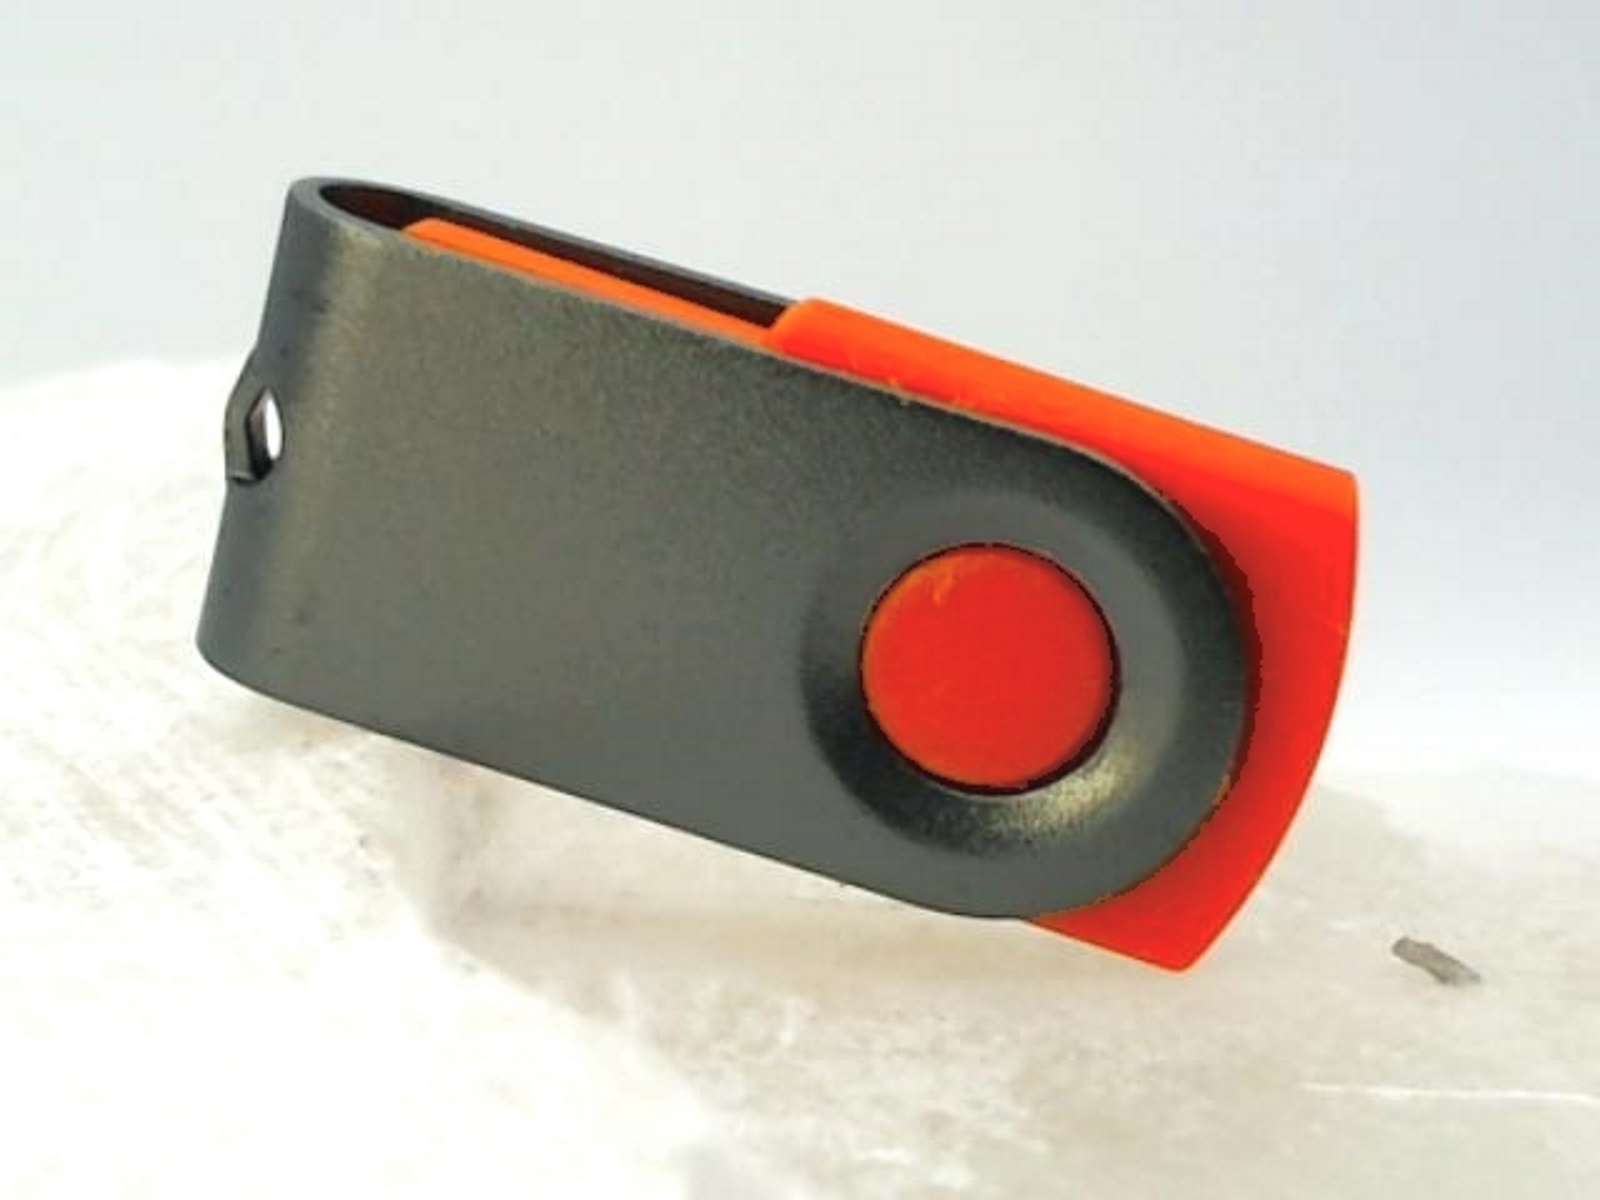 USB GERMANY ® MINI-SWIVEL GB) USB-Stick 2 (Rot-Graumetall